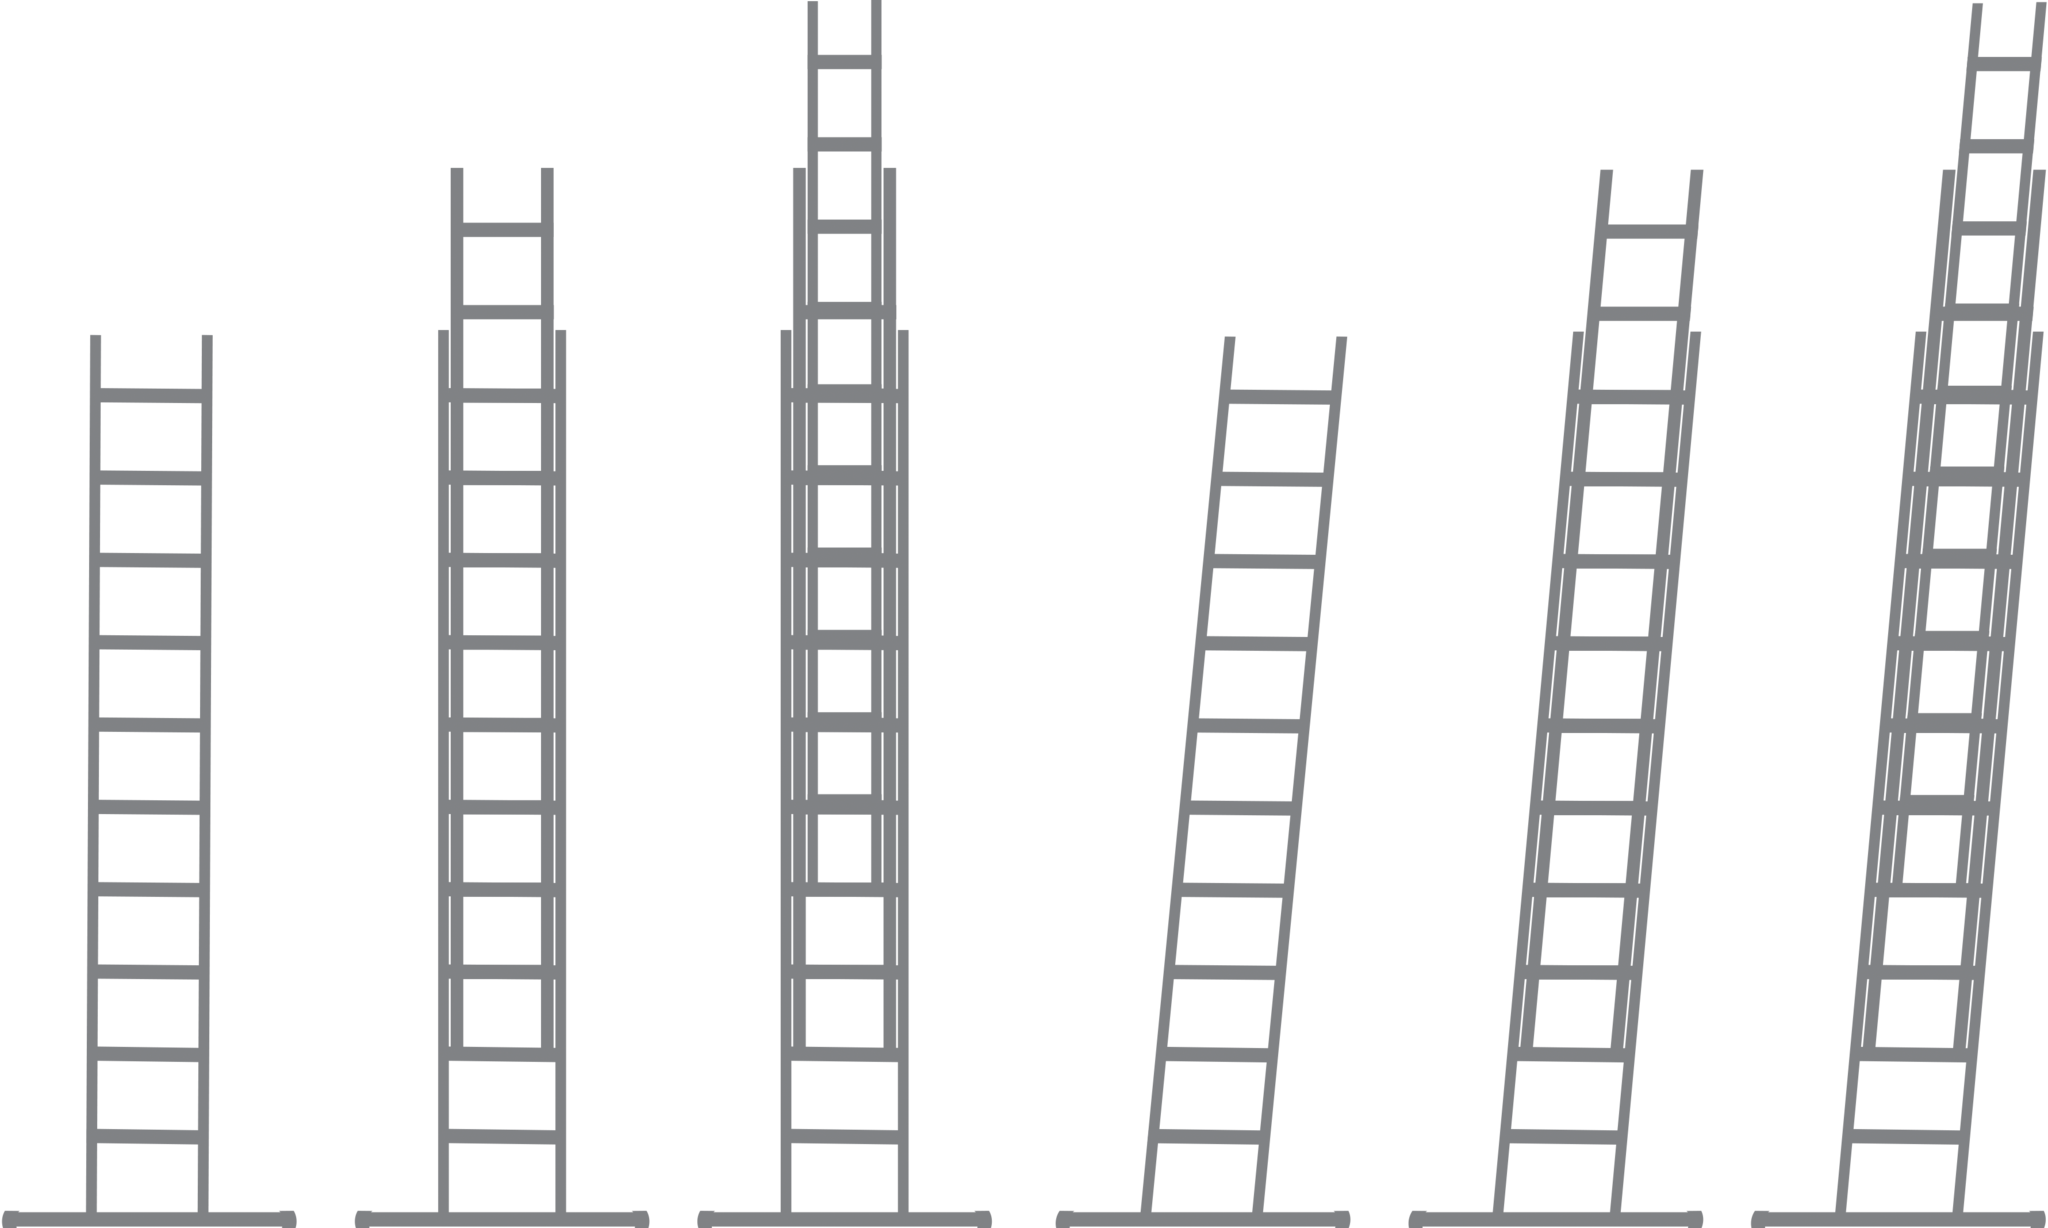 Kies de steiger, ladder of traphoogte voor de klus